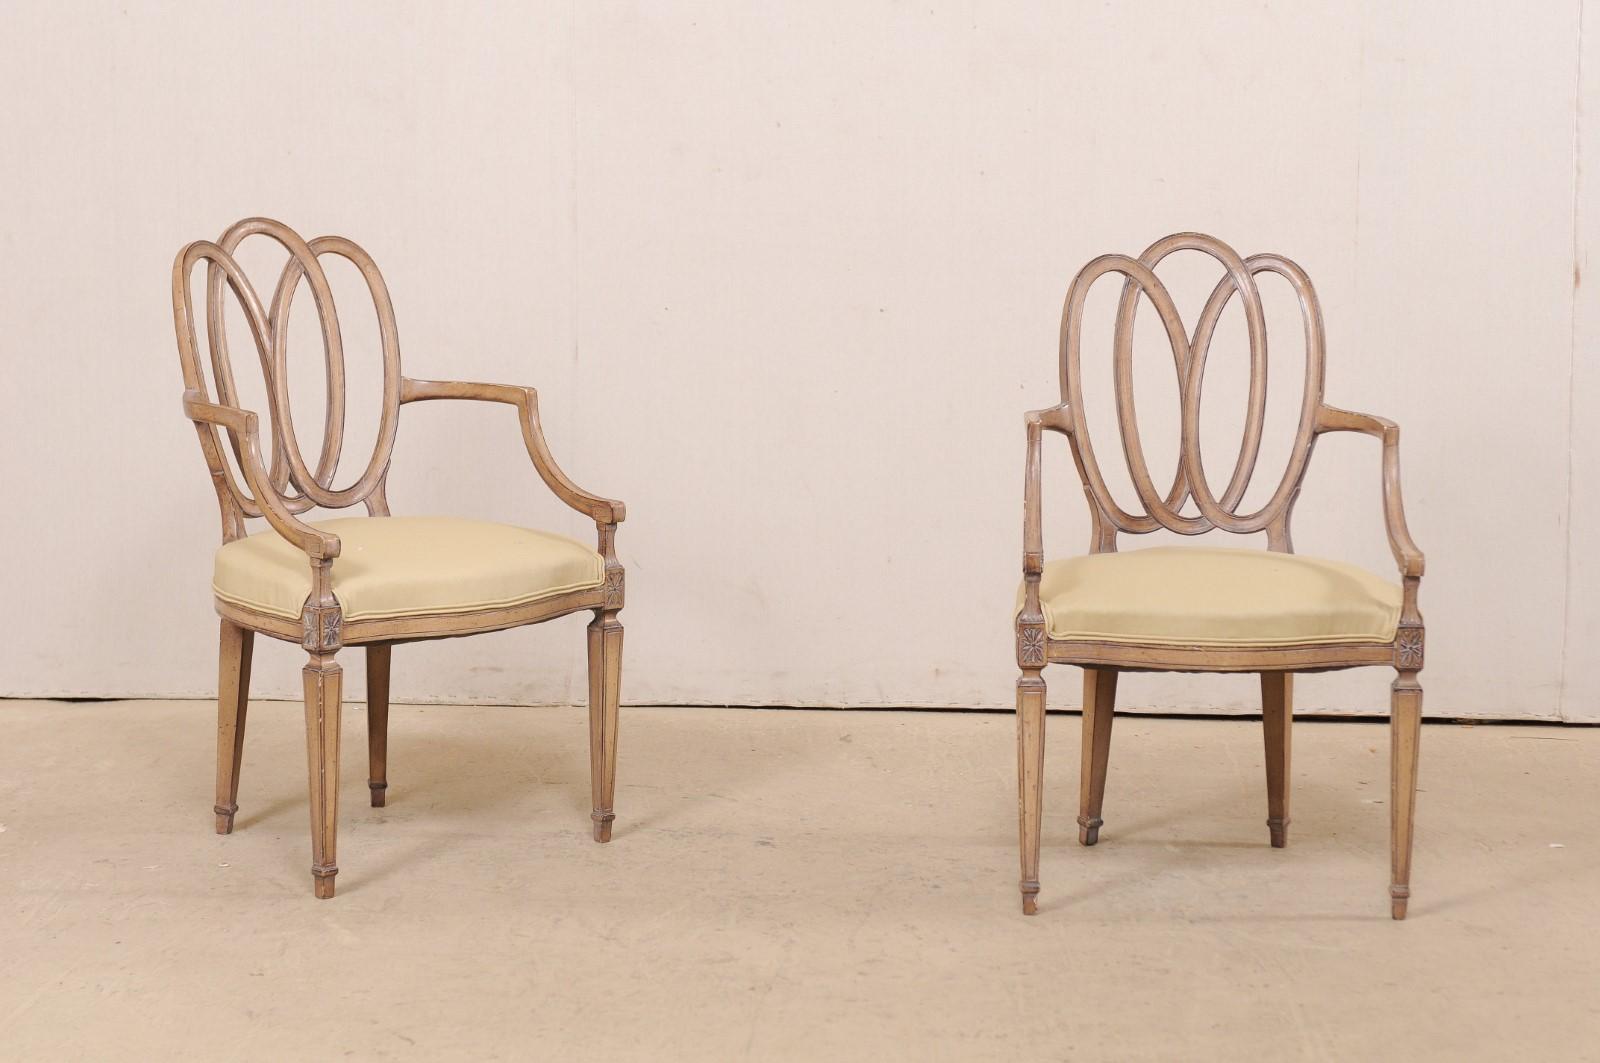 Ein italienisches Paar geschnitzter Holzsessel mit gepolsterten Sitzen aus der Mitte des 20. Jahrhunderts. Dieses Paar Beistellstühle aus Italien hat schön verschlungene durchbrochene ovale Rückenlehnen, geschnitzte Sternakzente schmücken die